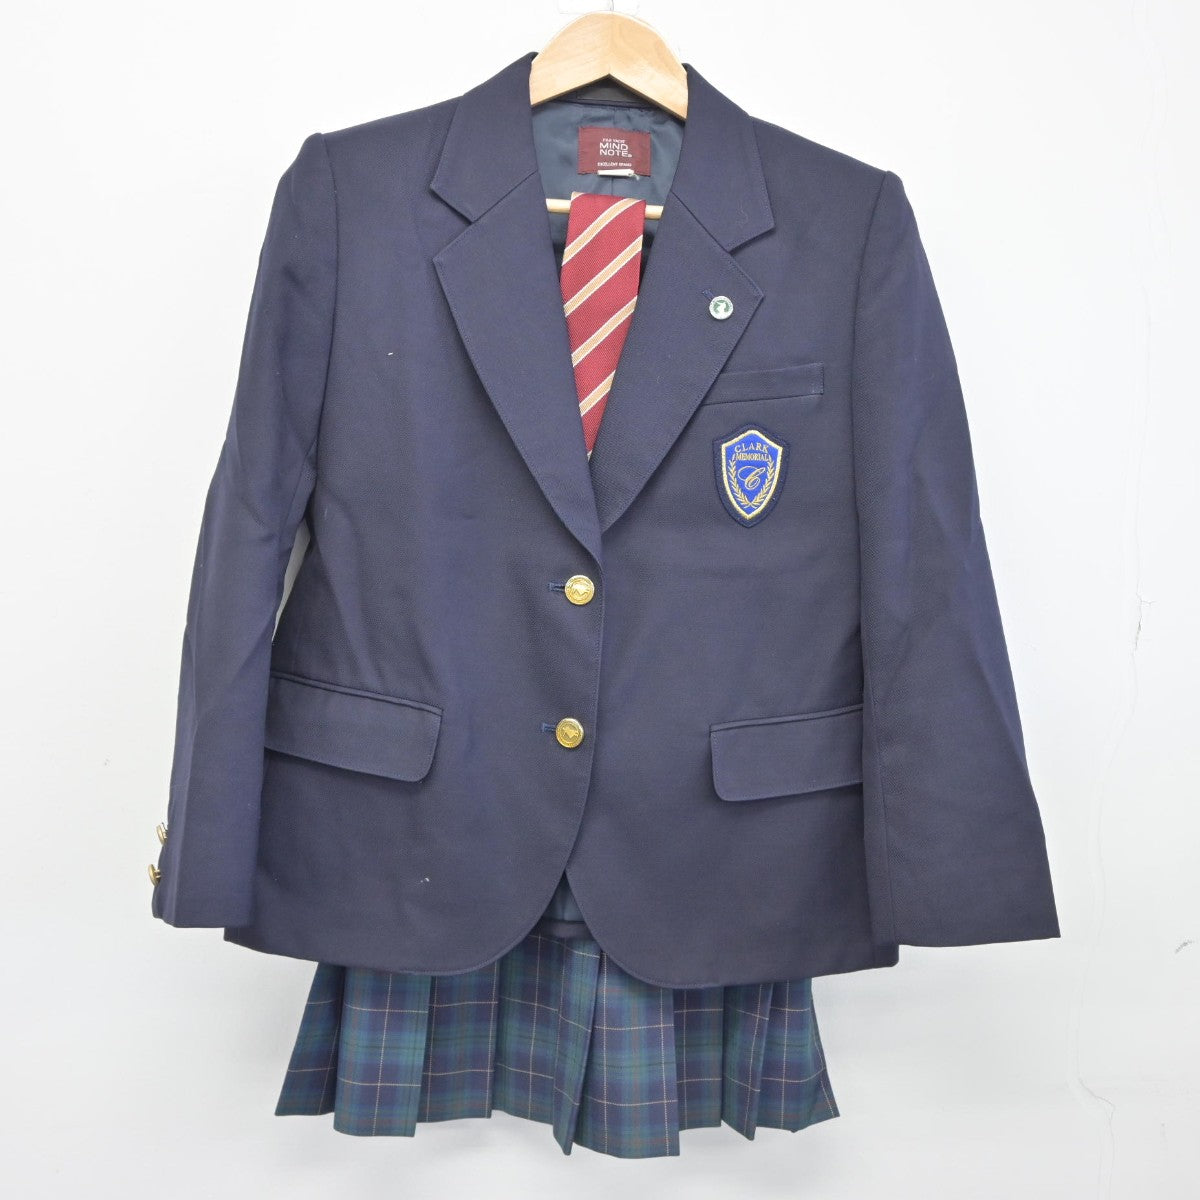 クラーク記念国際高等学校 ジャケット - メンズファッション